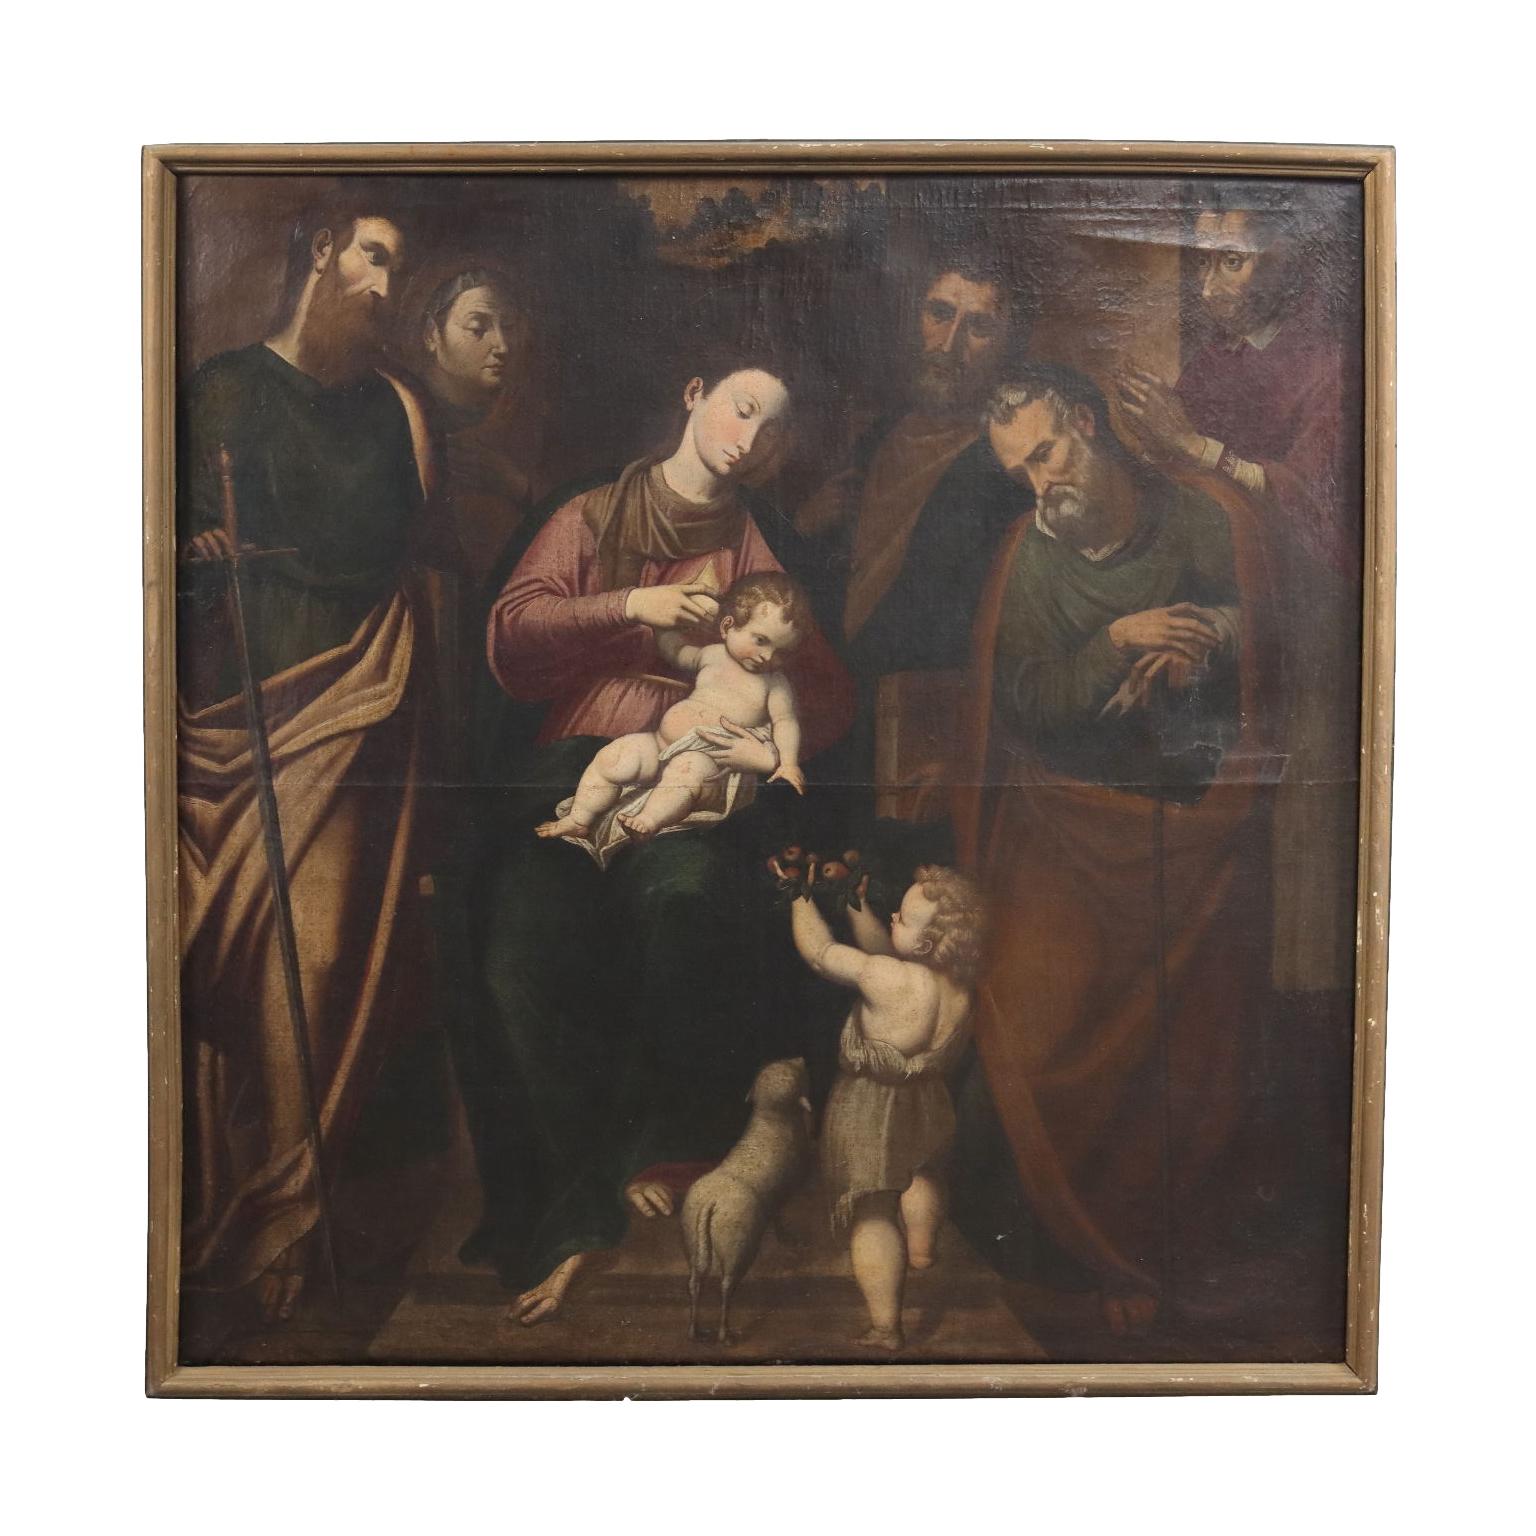 Figurative Painting Unknown - Huile sur toile sur sujet religieux, Italie, XVIIe siècle